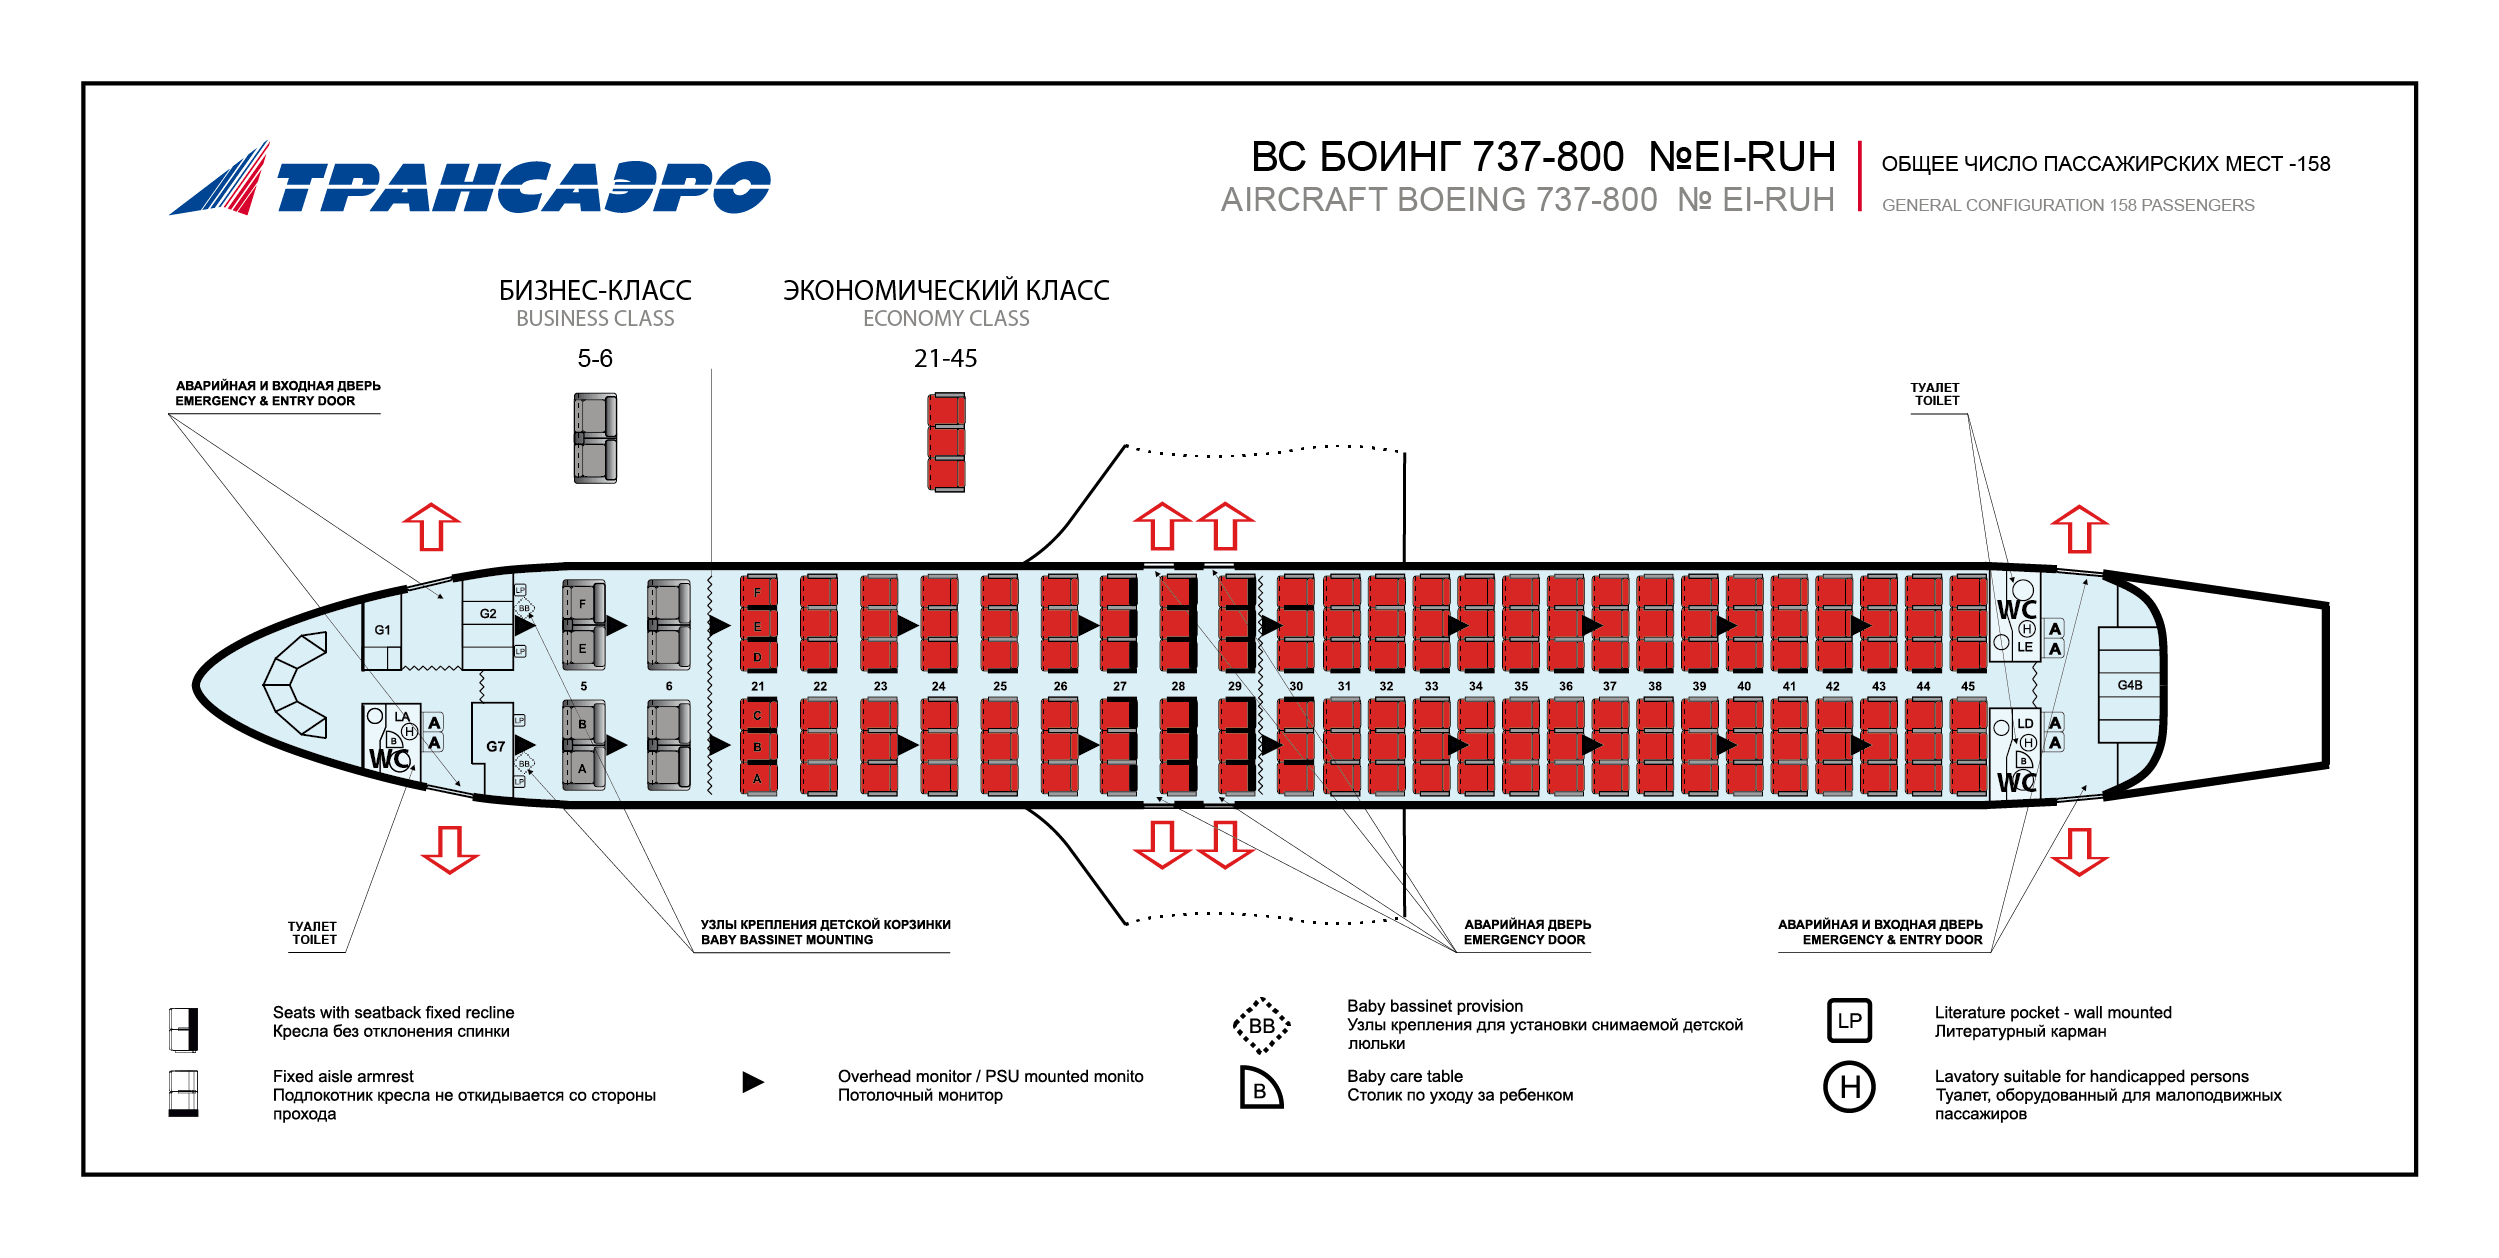 Порядок регистрации на рейс авиакомпании s7: через интернет, в аэропорту